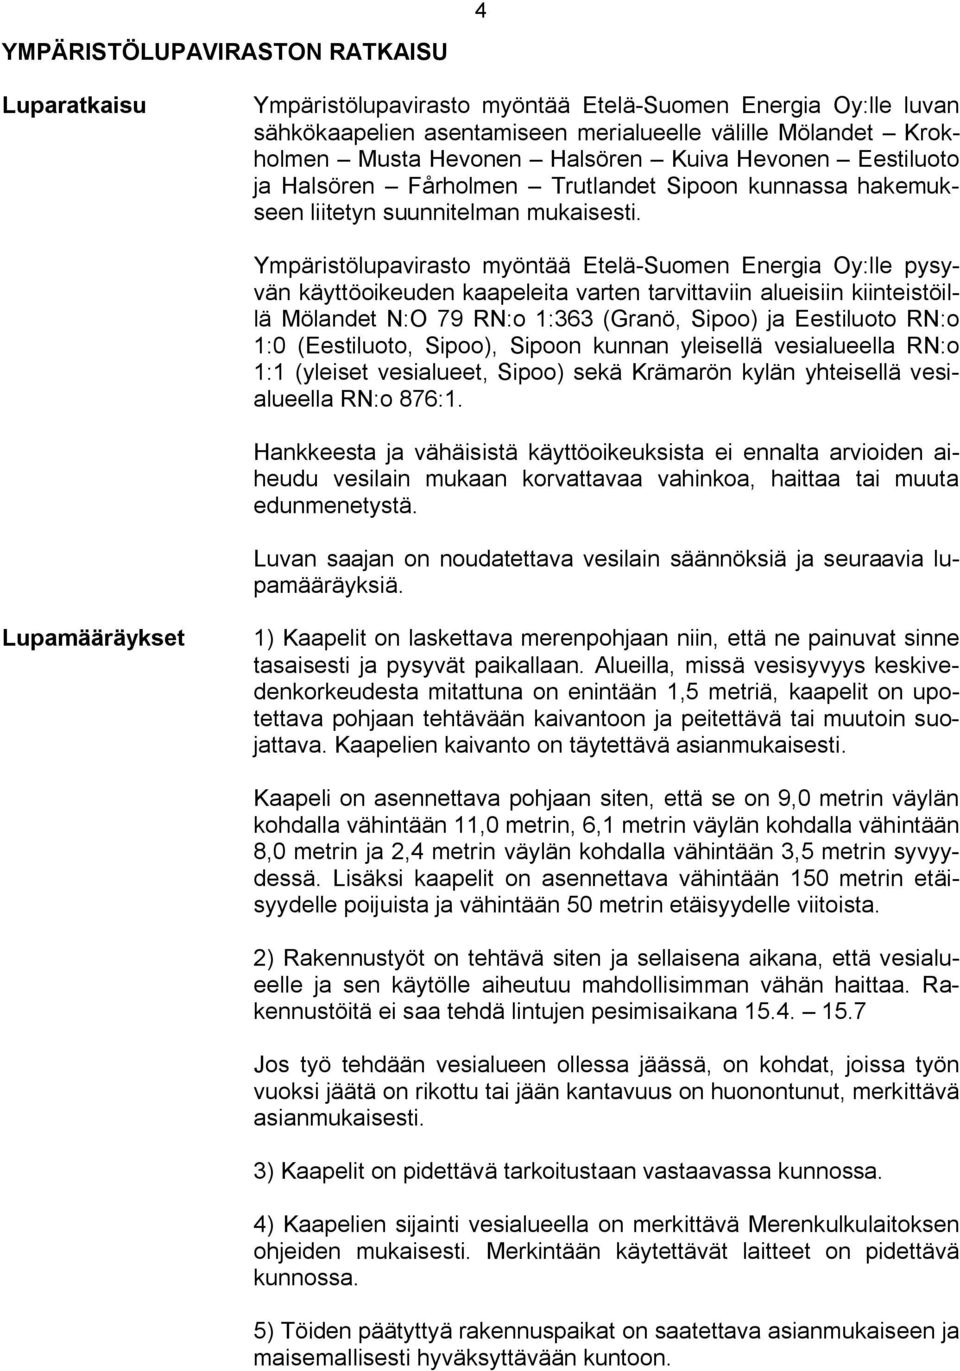 Ympäristölupavirasto myöntää Etelä Suomen Energia Oy:lle pysyvän käyttöoikeuden kaapeleita varten tarvittaviin alueisiin kiinteistöillä Mölandet N:O 79 RN:o 1:363 (Granö, Sipoo) ja Eestiluoto RN:o